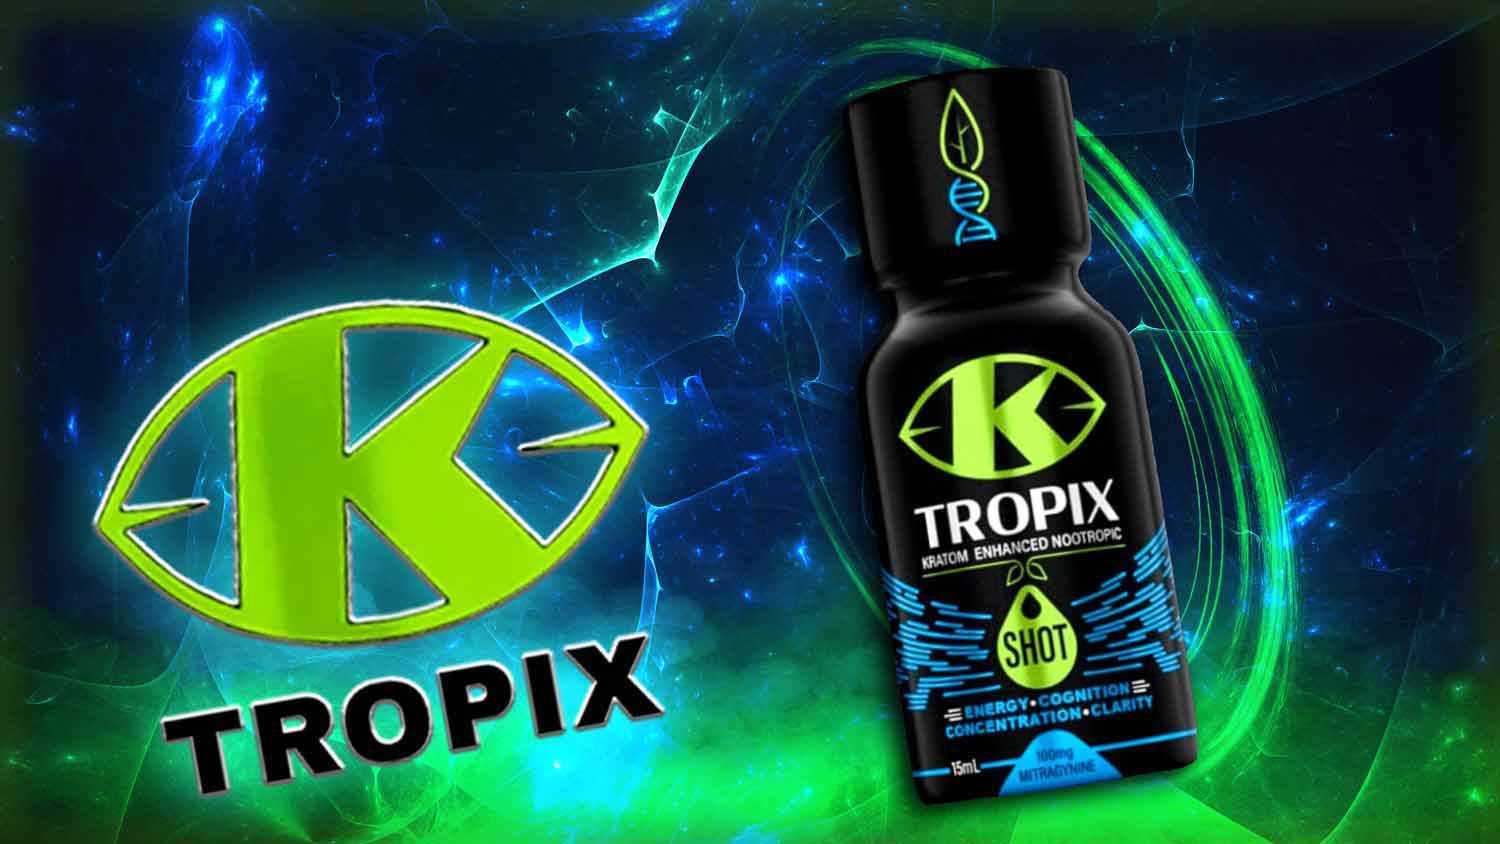  K Tropix Kratom Enhanced Nootropic Shot 